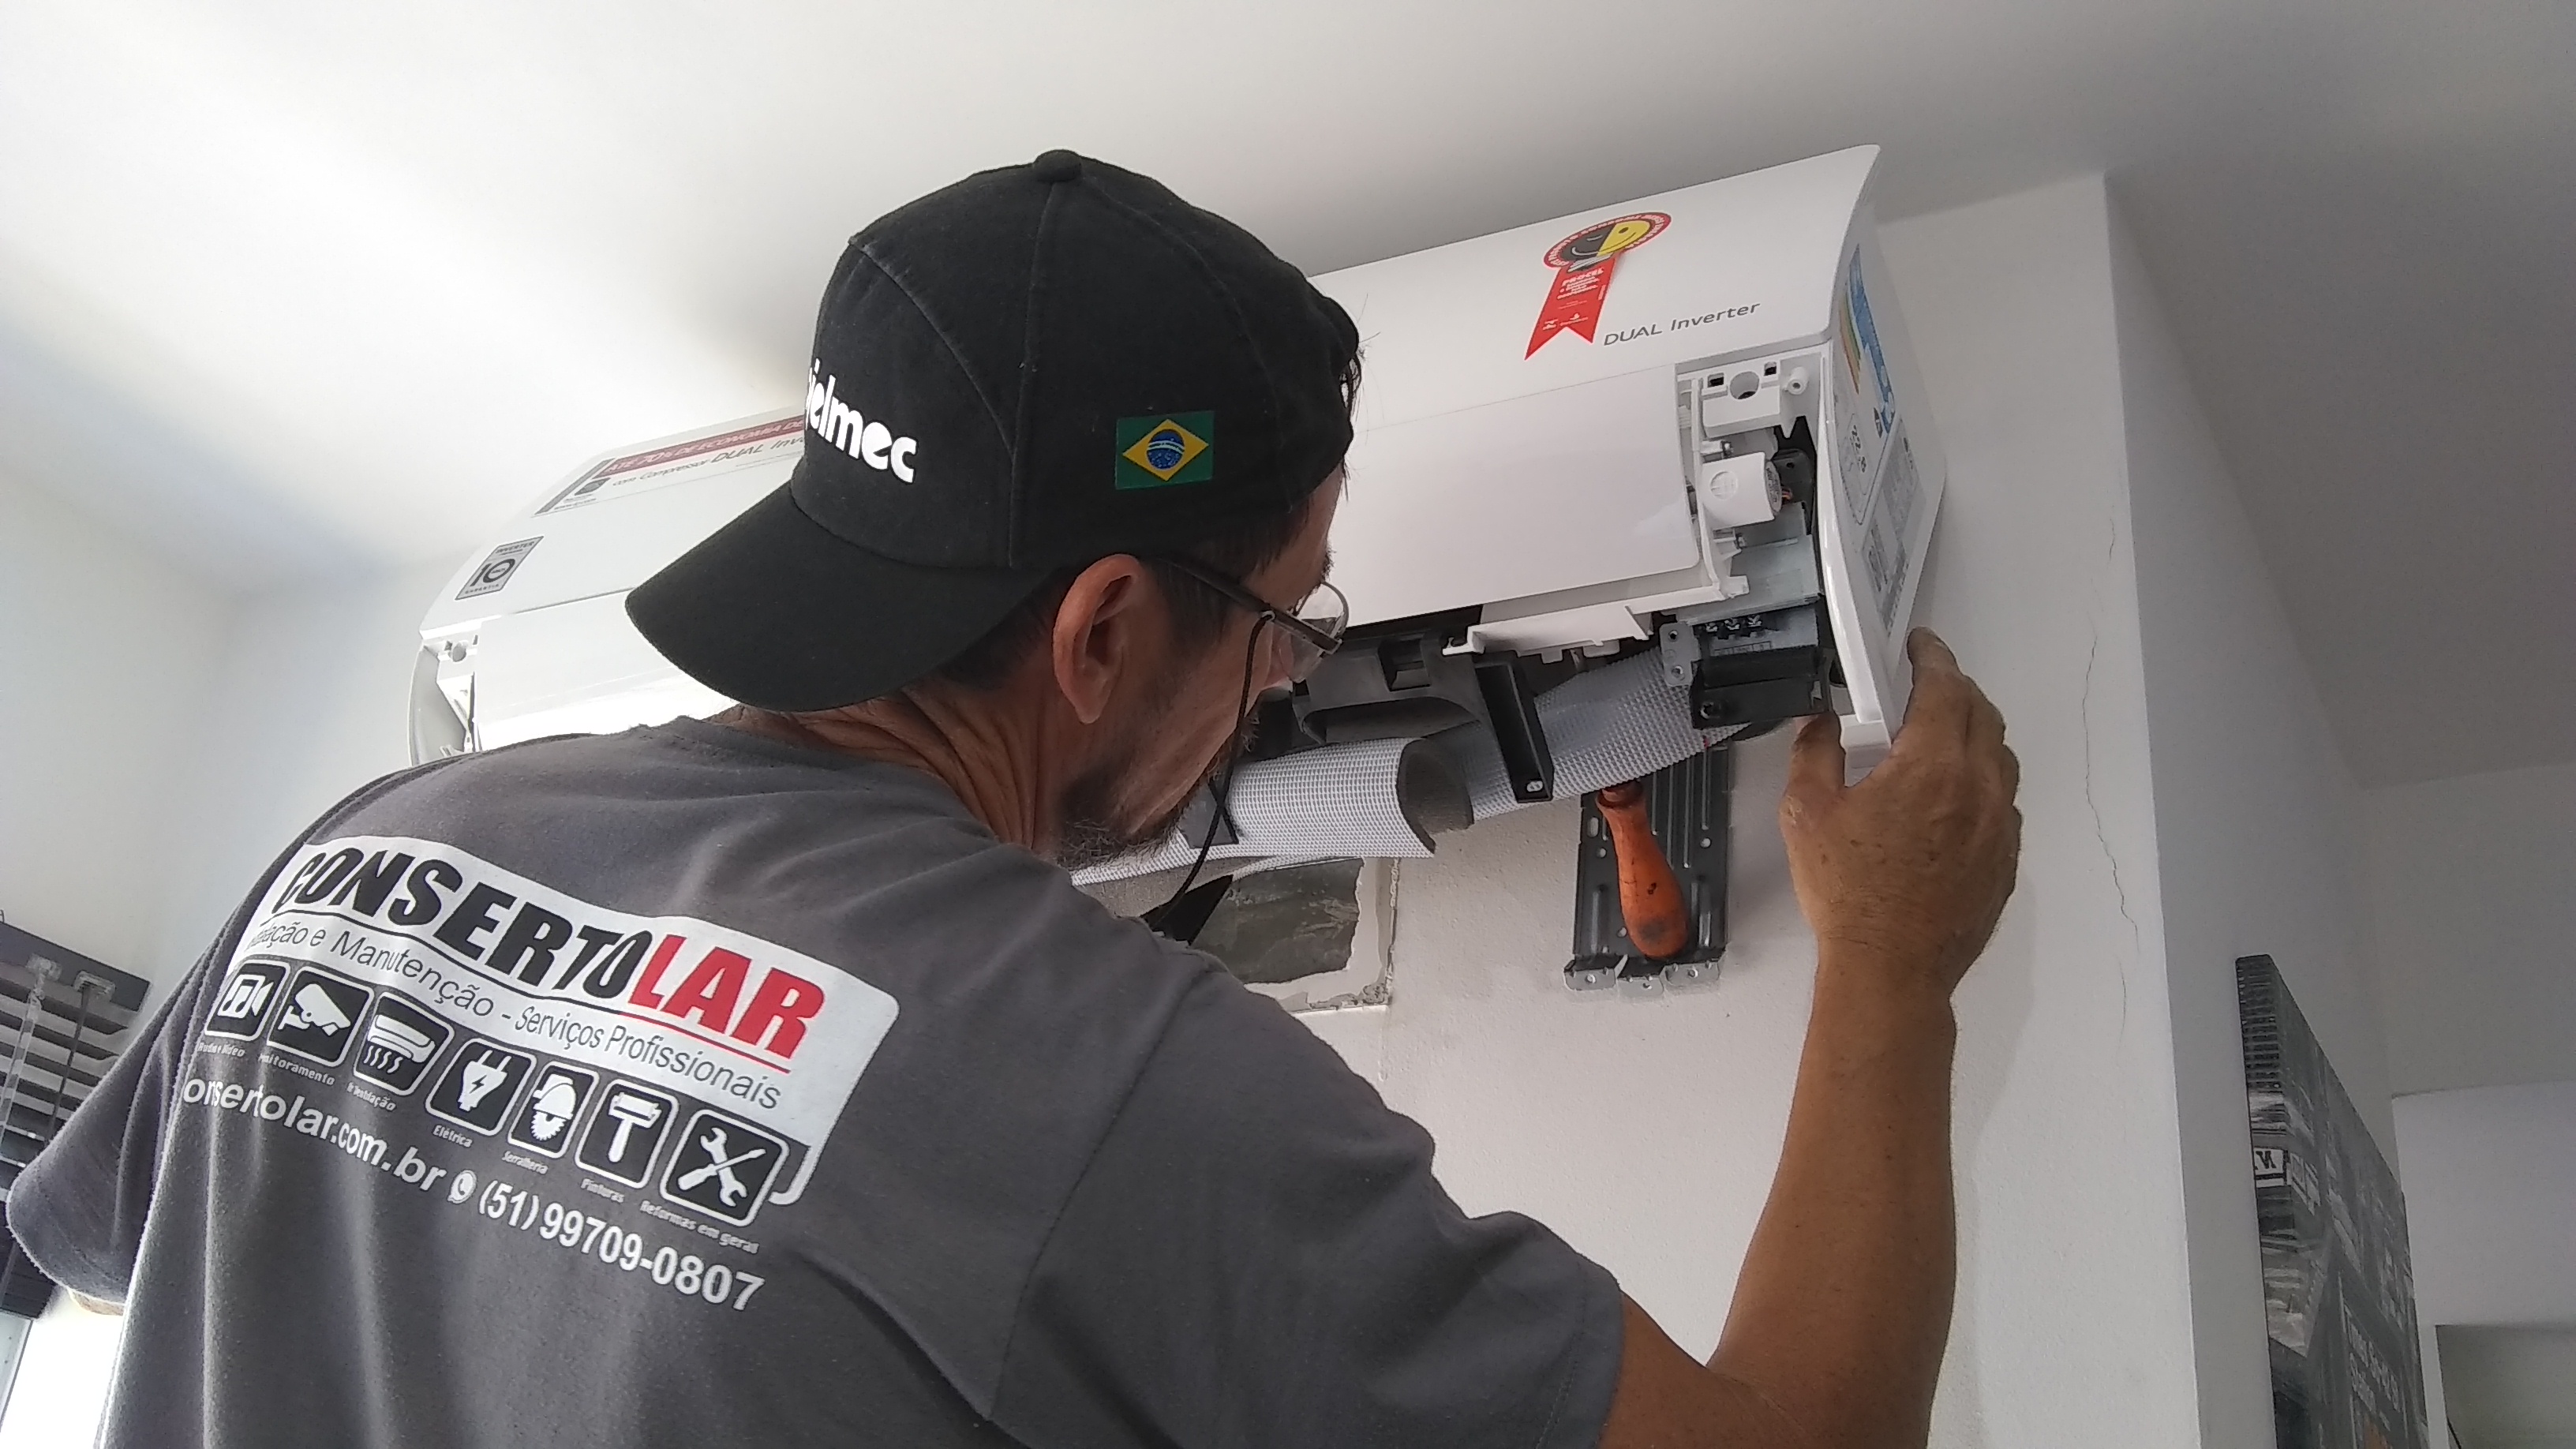 Consertolar-Instalação-e-Manutenção-de-Ar-condicionado-em-Porto-Alegre